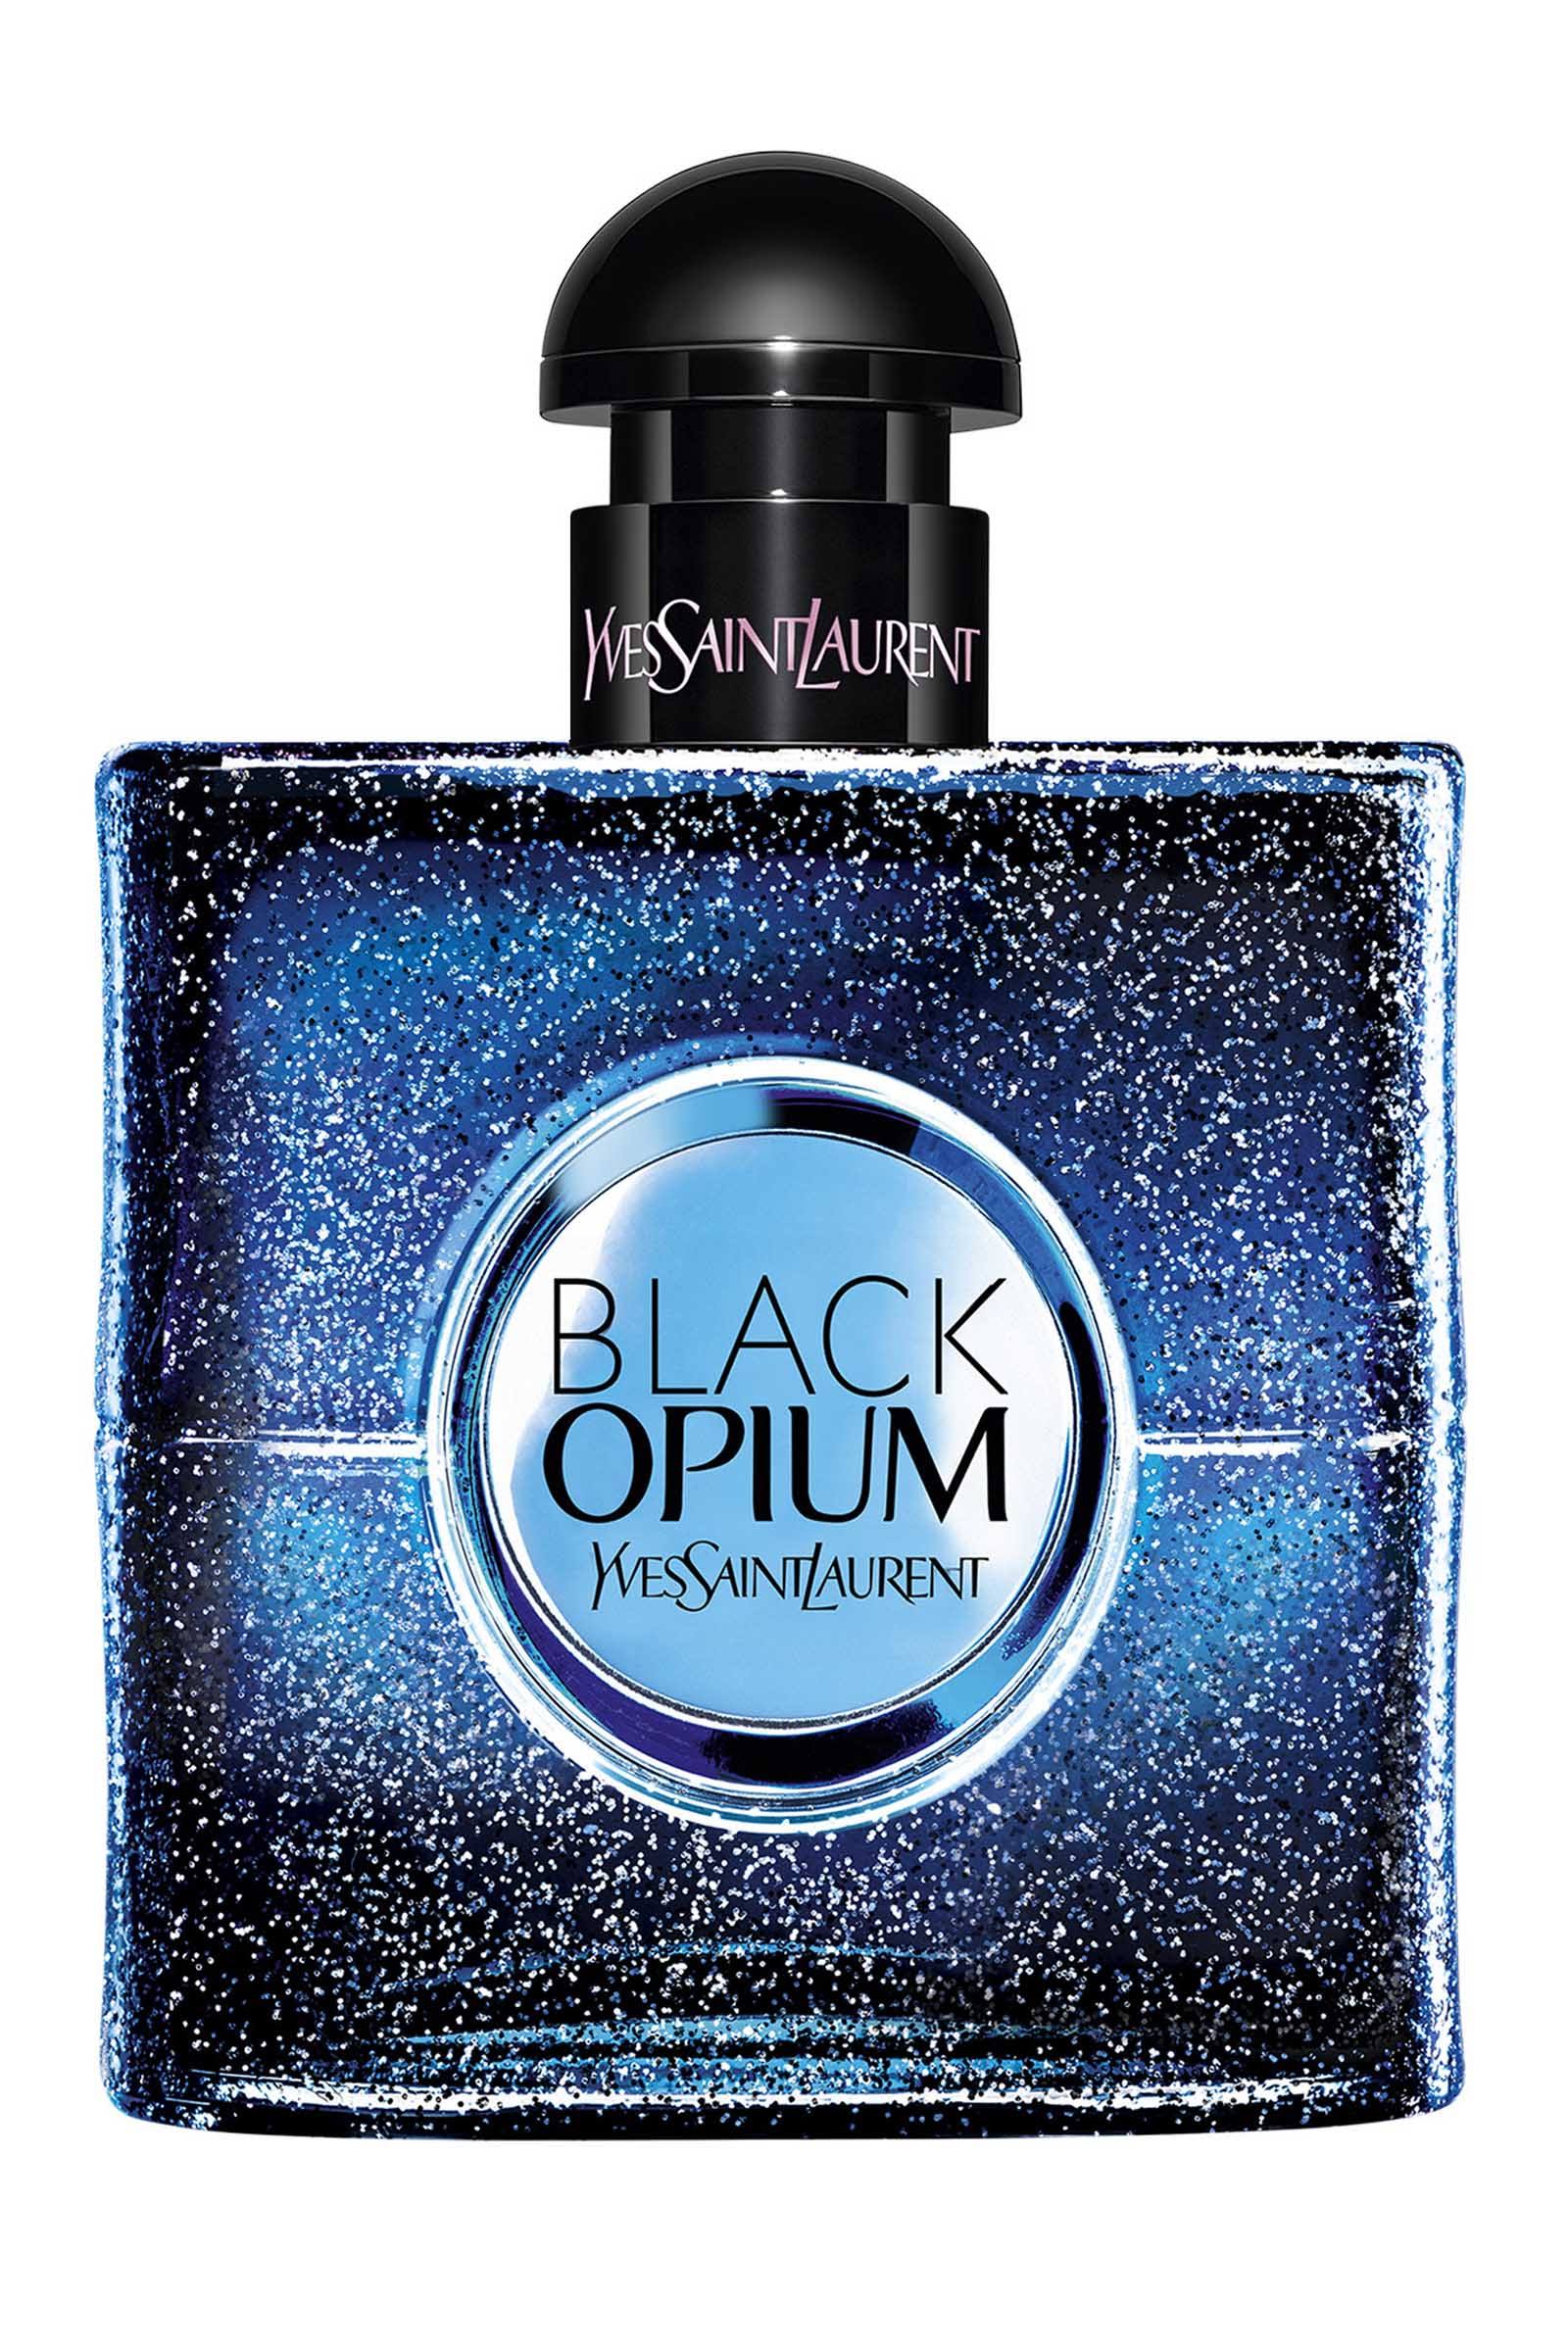 Yves Saint Laurent Black Opium 90ml Eau de Parfum Intense Spray